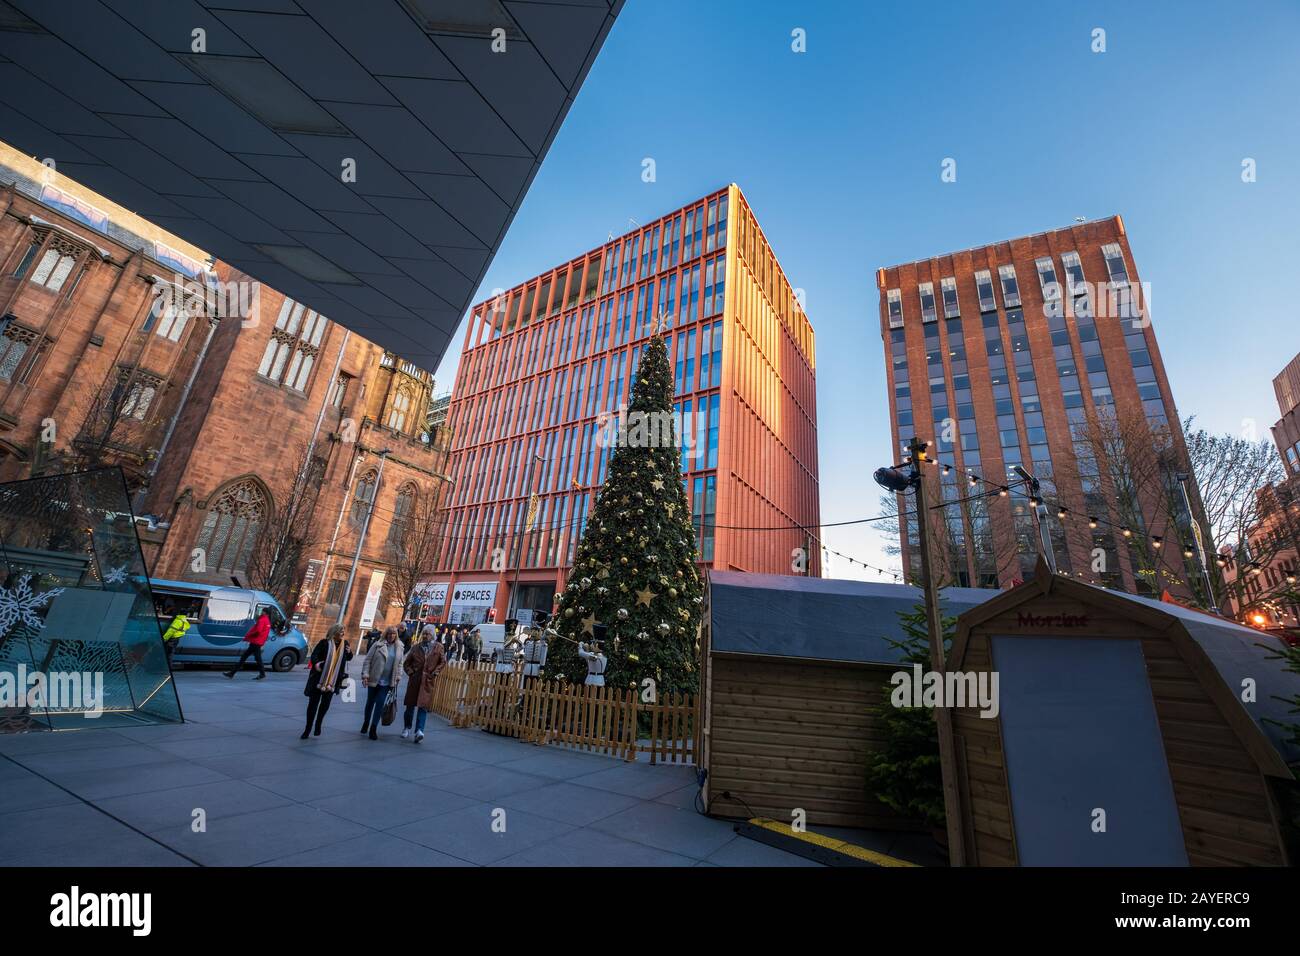 Spinningfields moderno negocio, comercio minorista y zona residencial de desarrollo de Manchester durante la Navidad Foto de stock